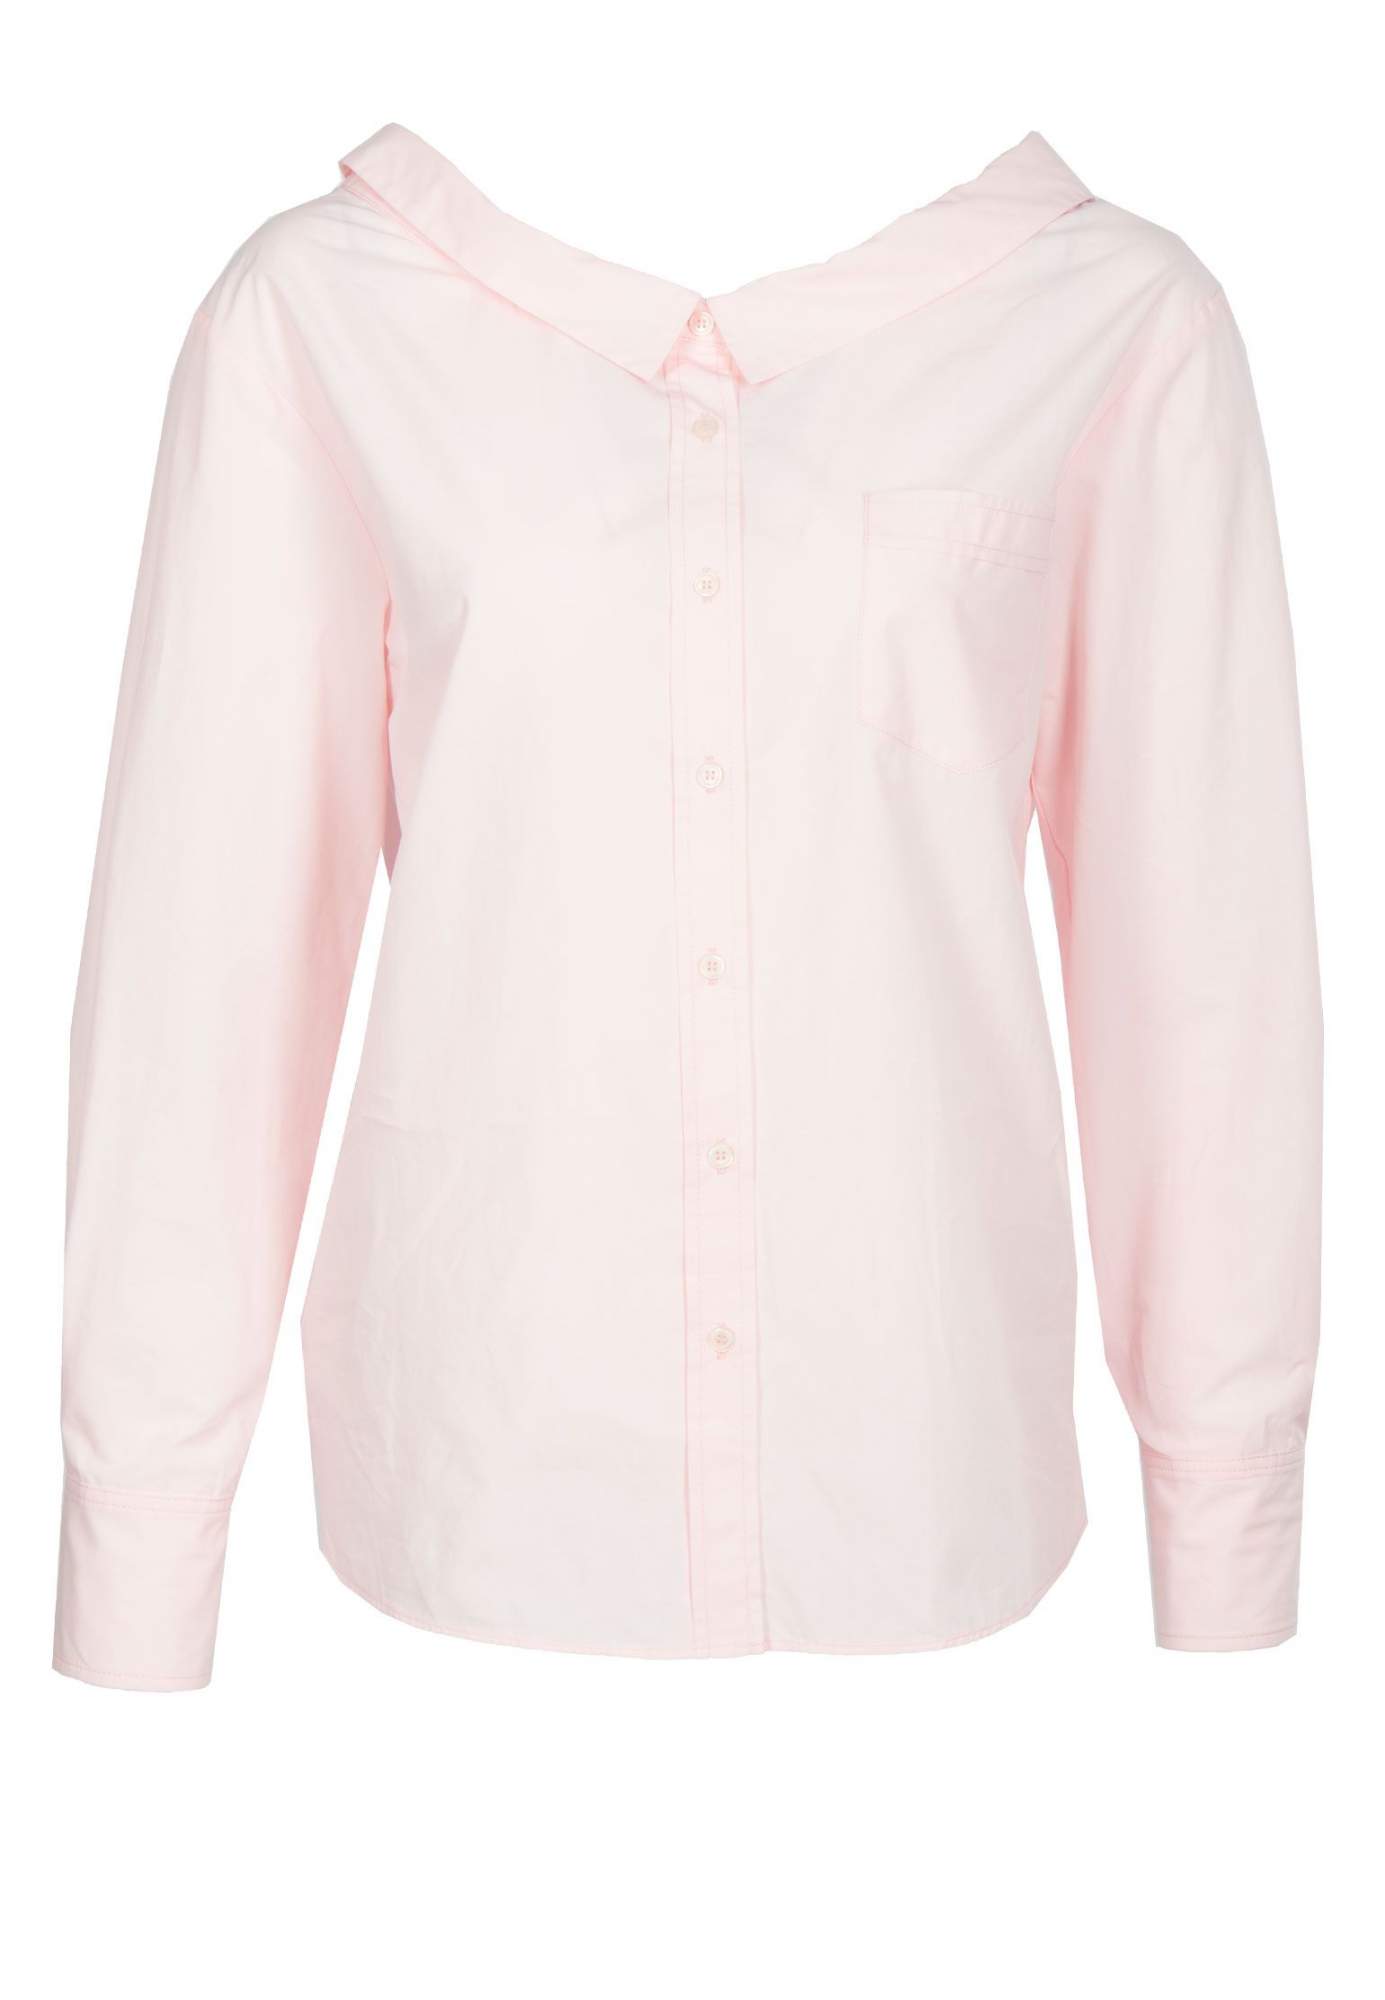 Рубашка женская Pinko 91151 розовая 38 IT